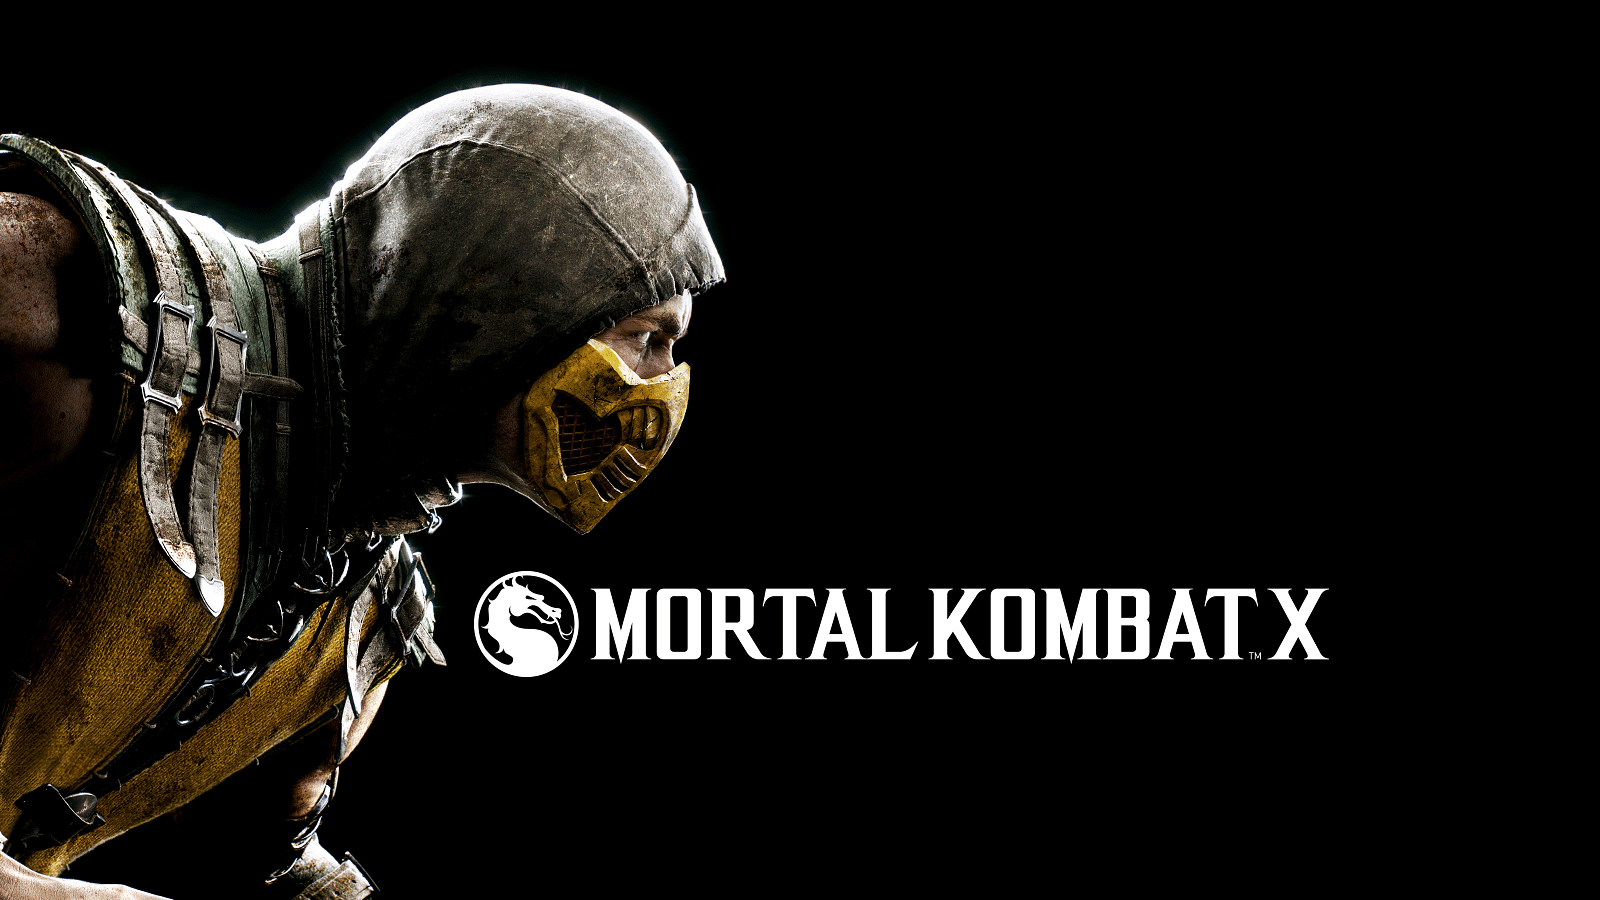 Mortal Kombat X review